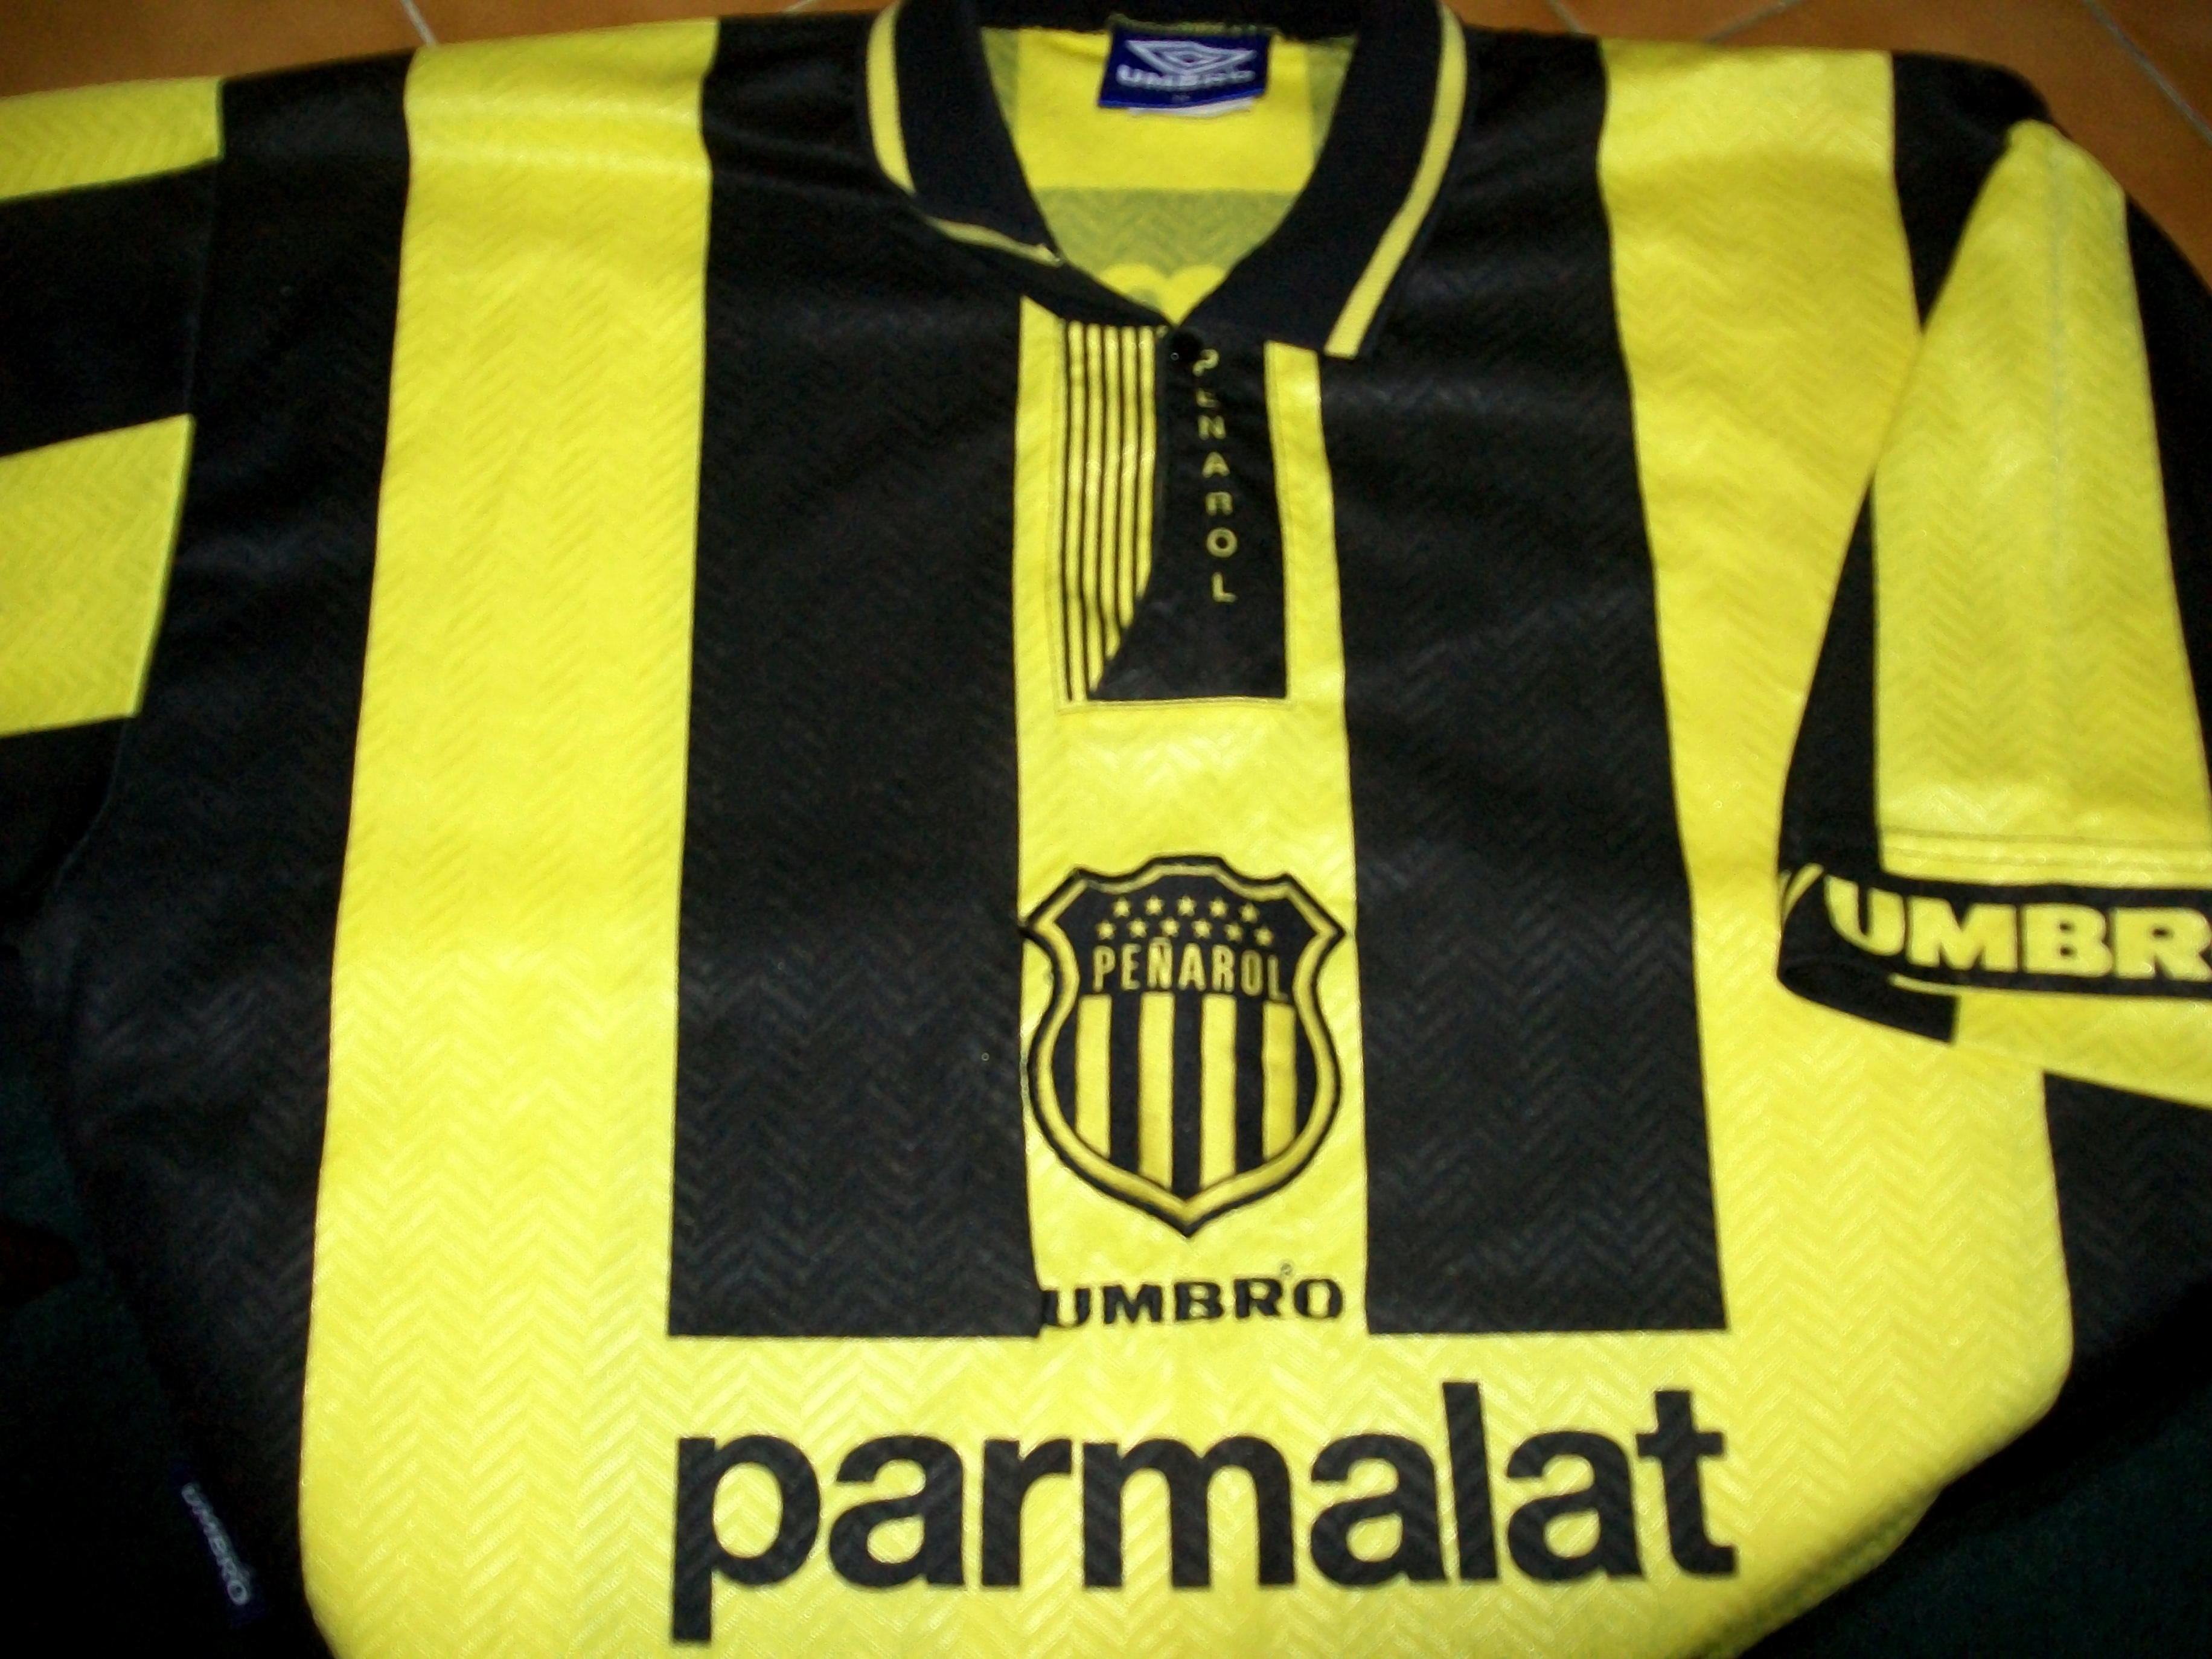 Peñarol - Wikipedia